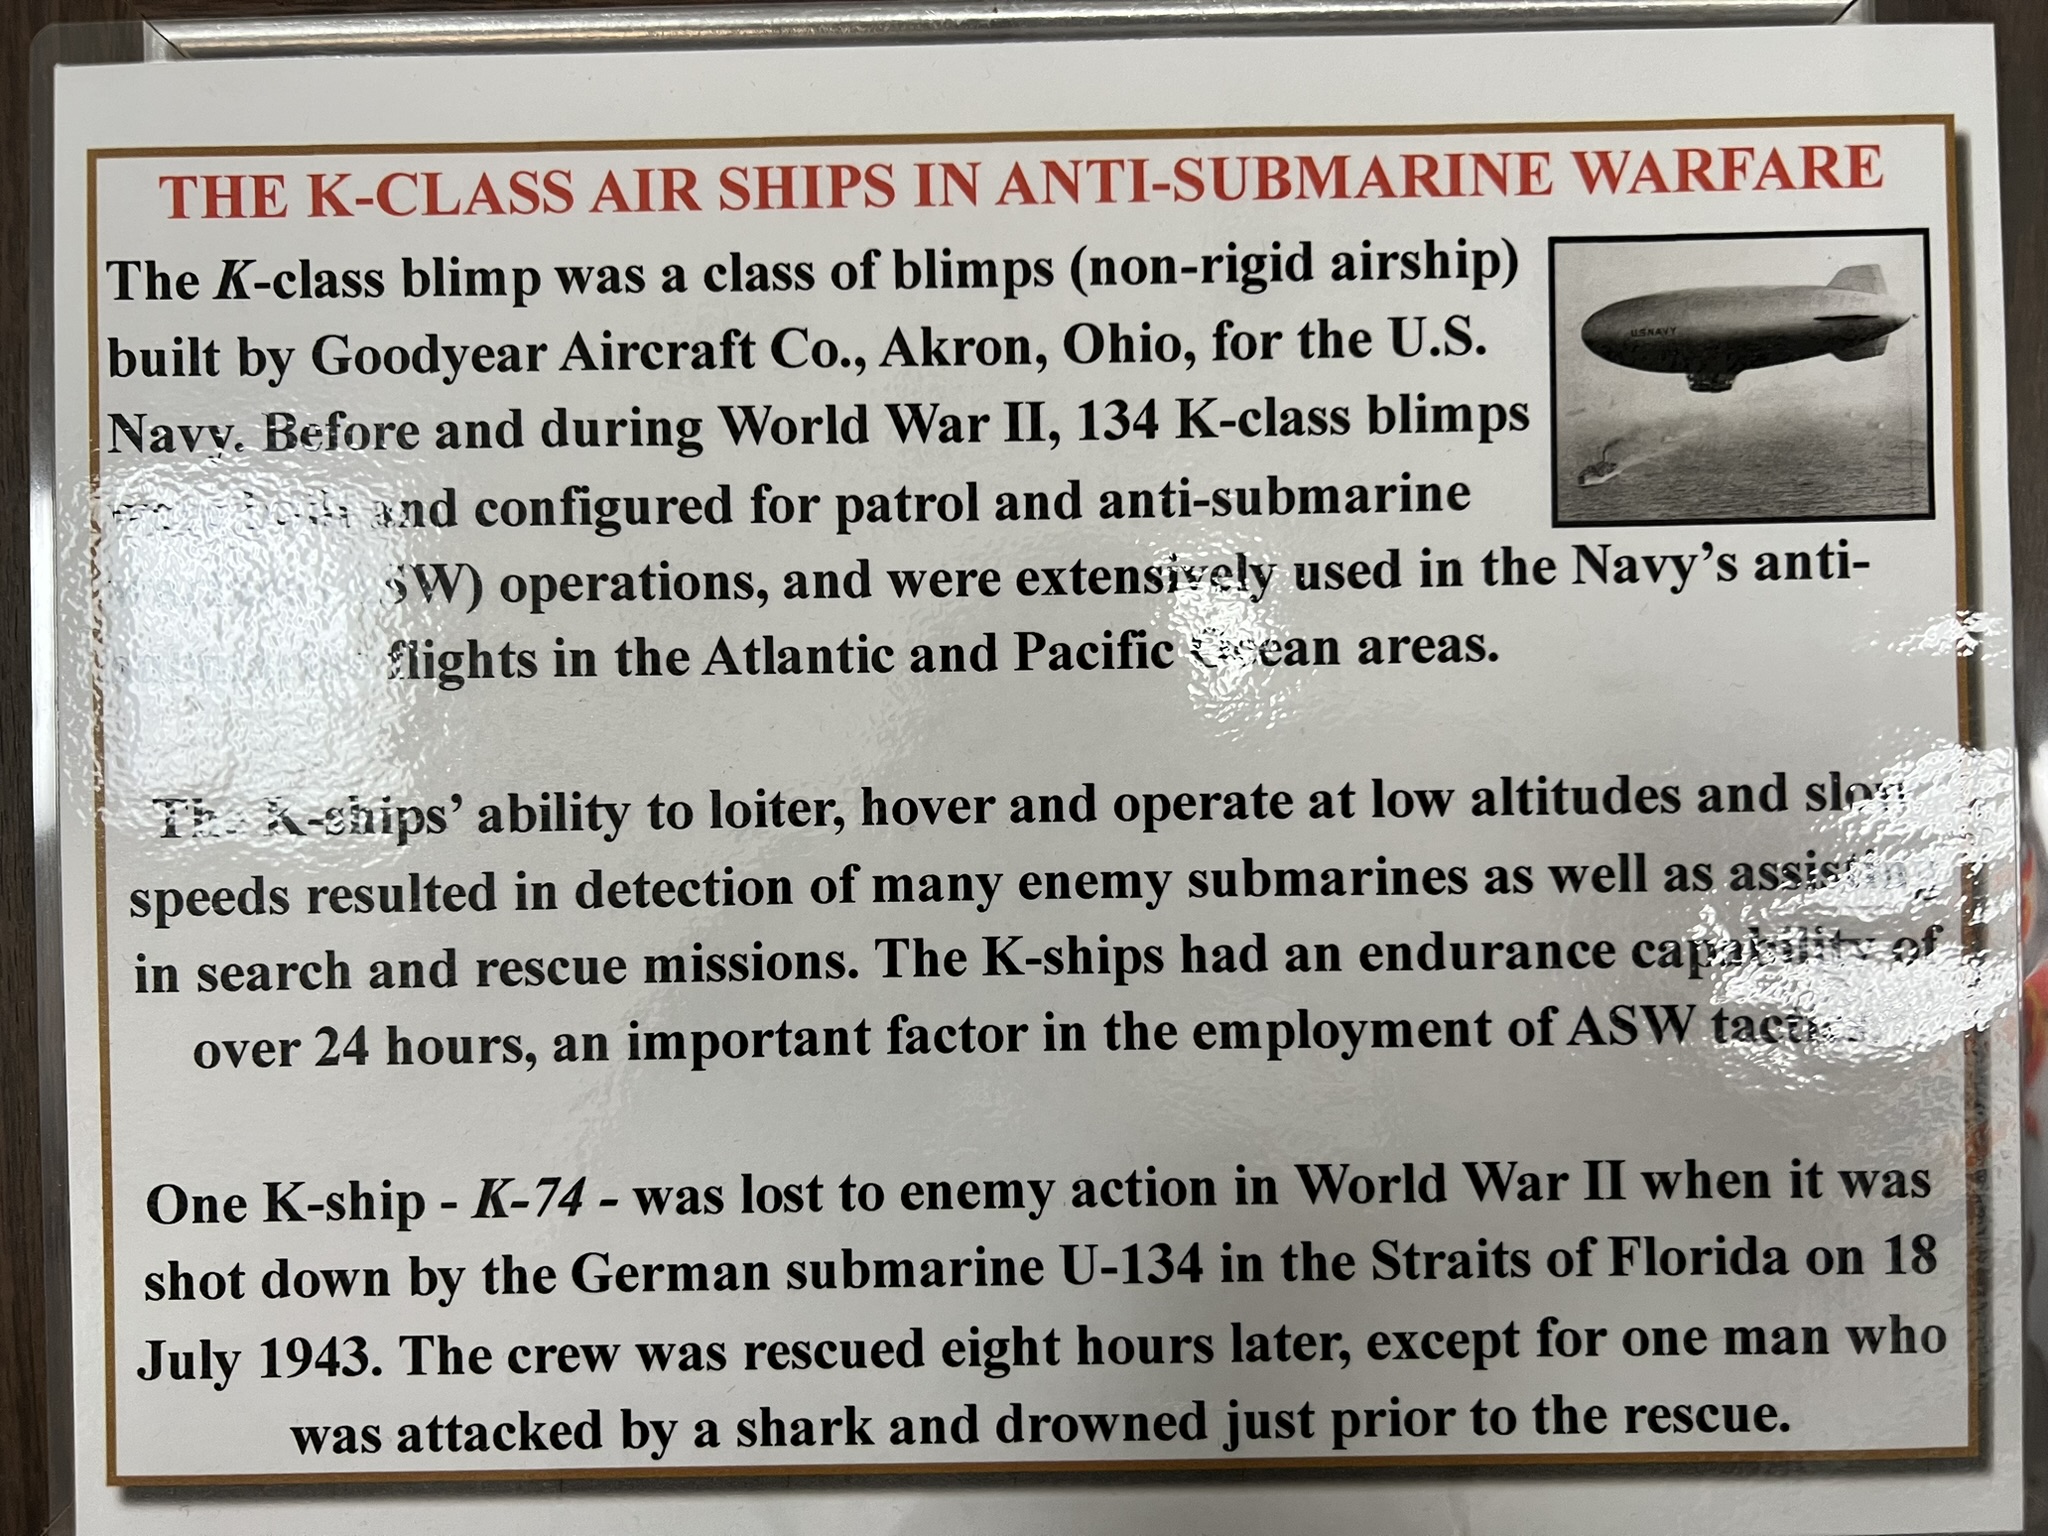 K 级飞艇是用来反潜的，但是这个 K-74 却被潜艇击落了